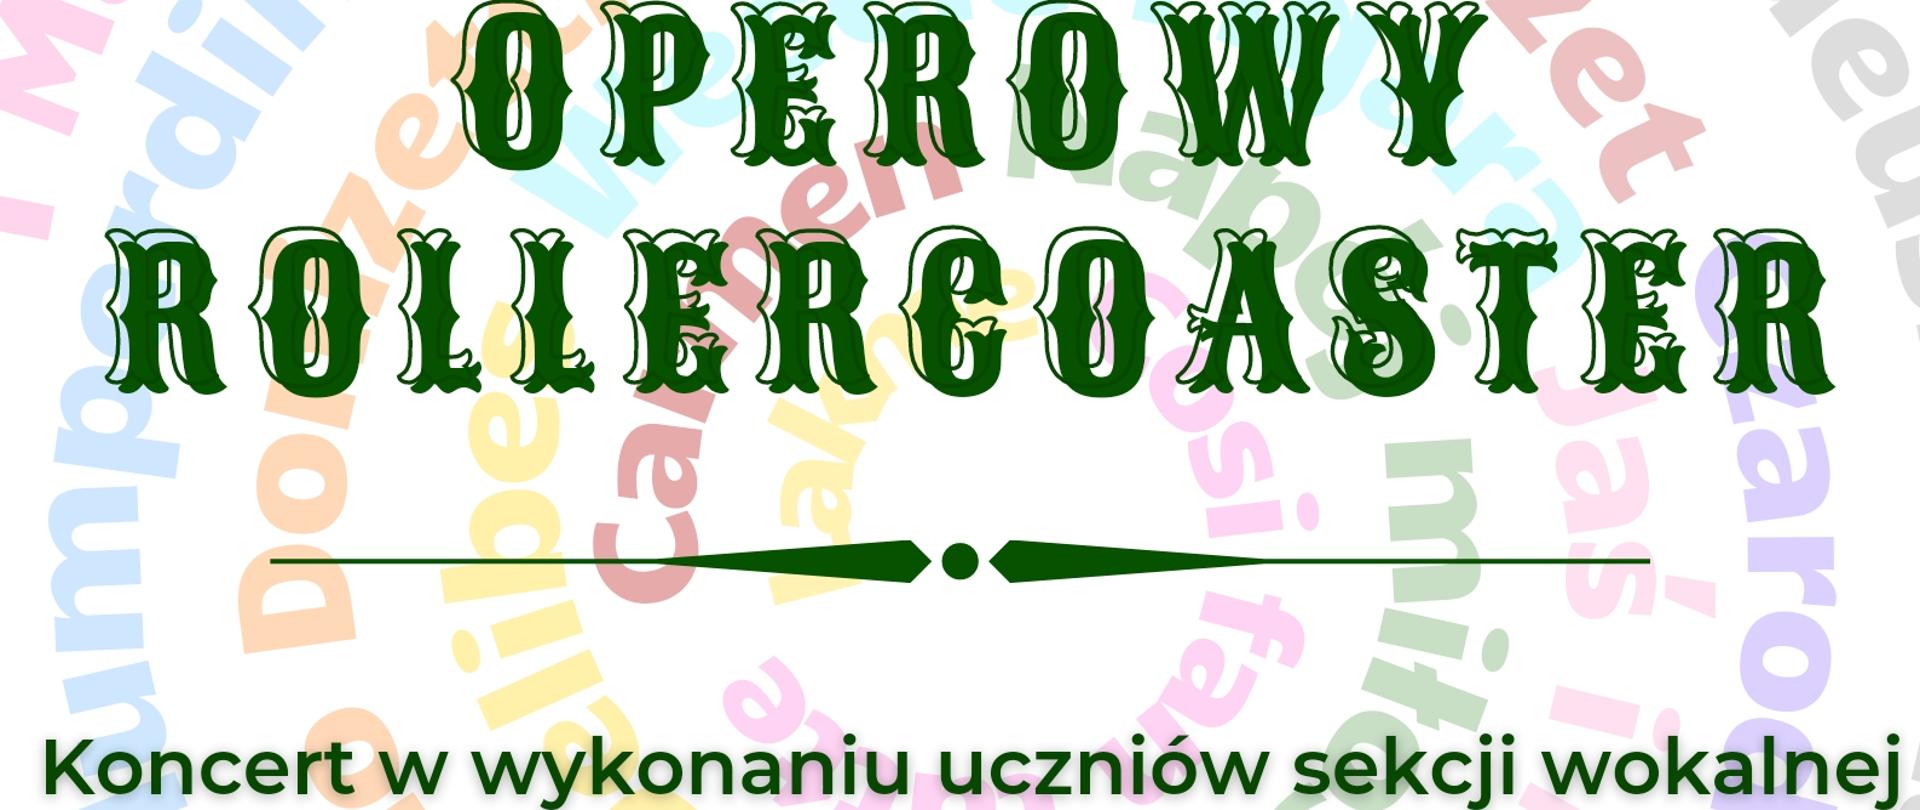 kolorowy plakat literki ułożone w kółka napis zielony Operowy rollercoaster